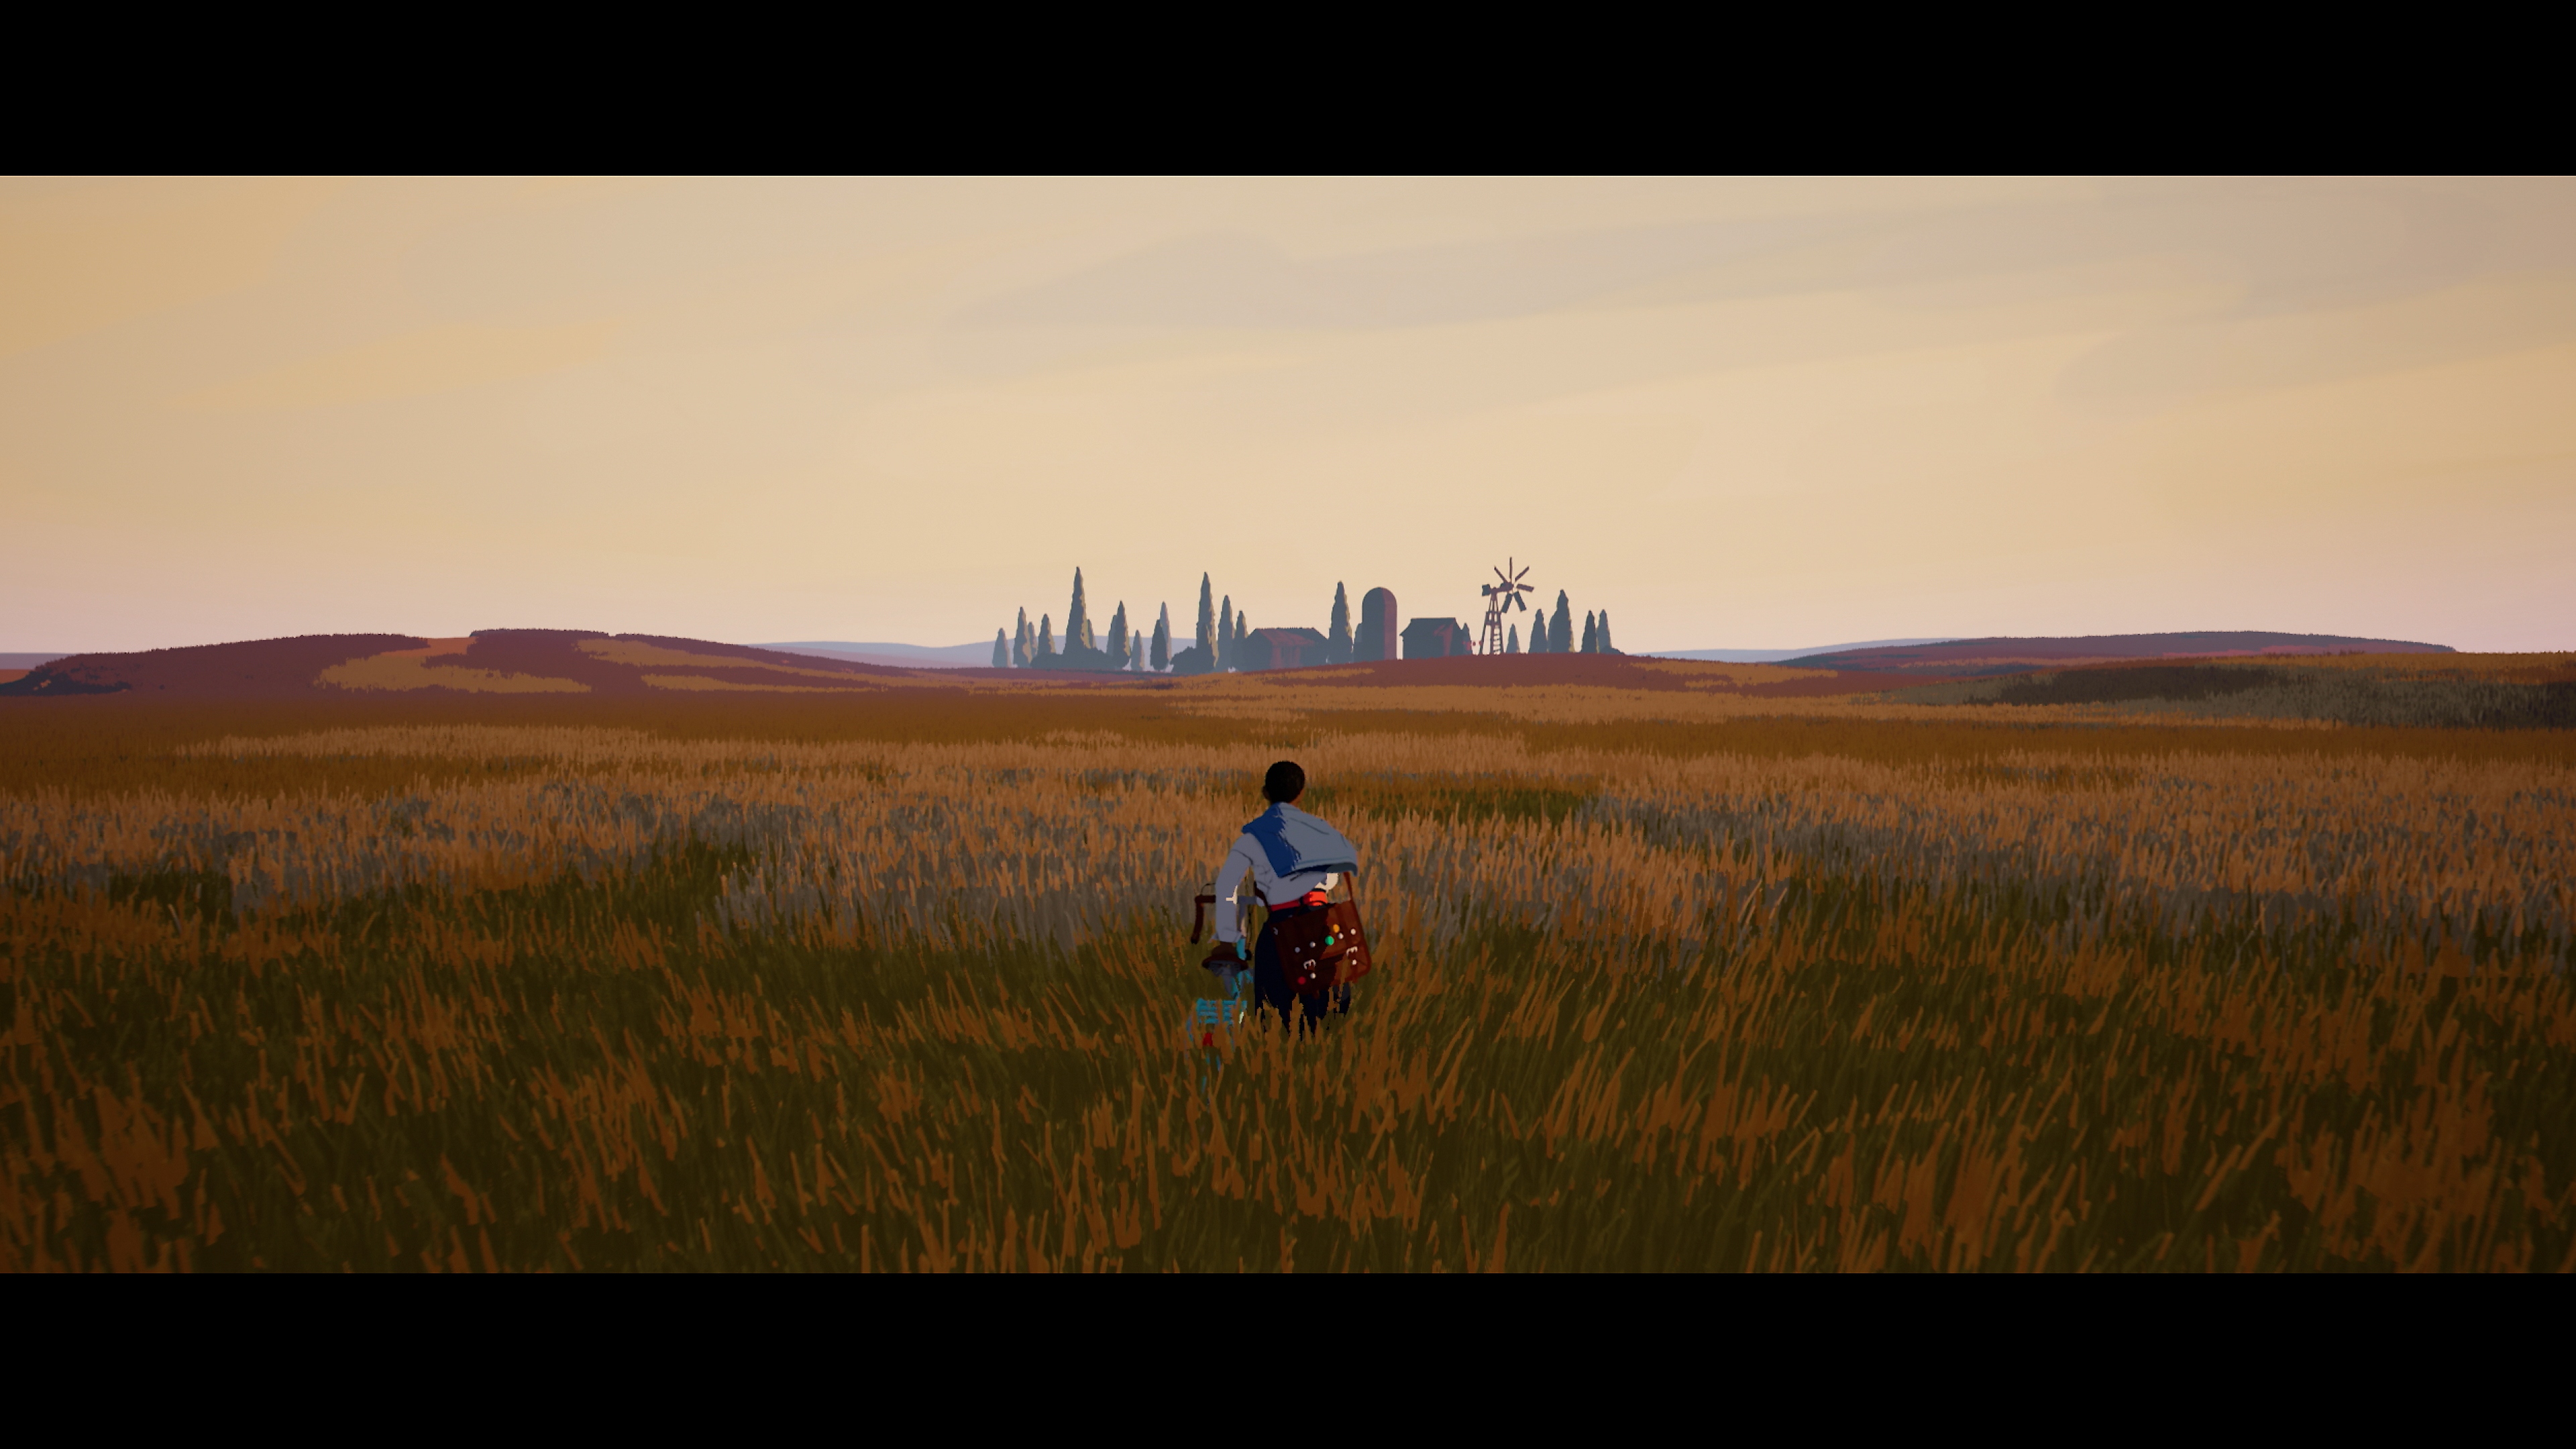 لعبة Season: A Letter to the Future - لقطة شاشة تعرض الشخصية الرئيسية جالسة في حقل